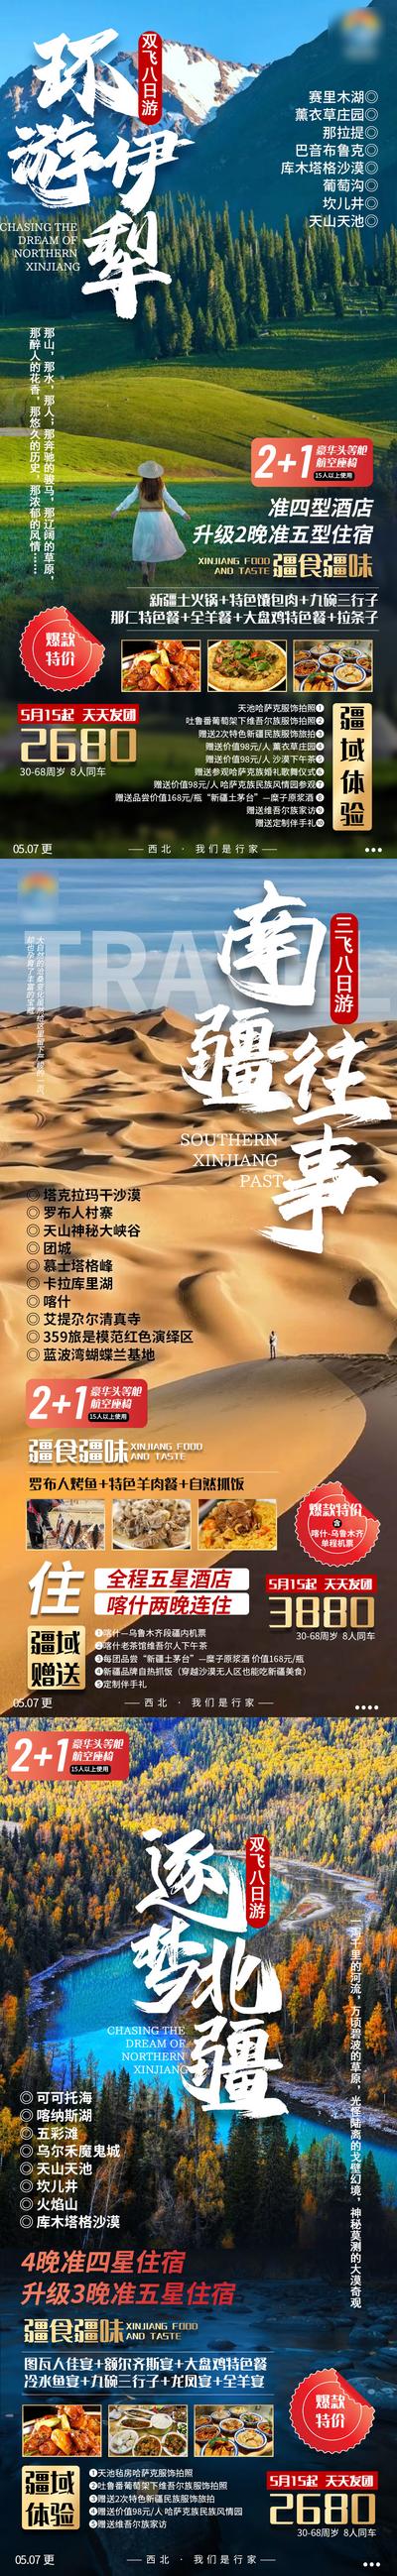 【南门网】海报 旅游 新疆 北疆 伊犁 沙漠 风景 系列